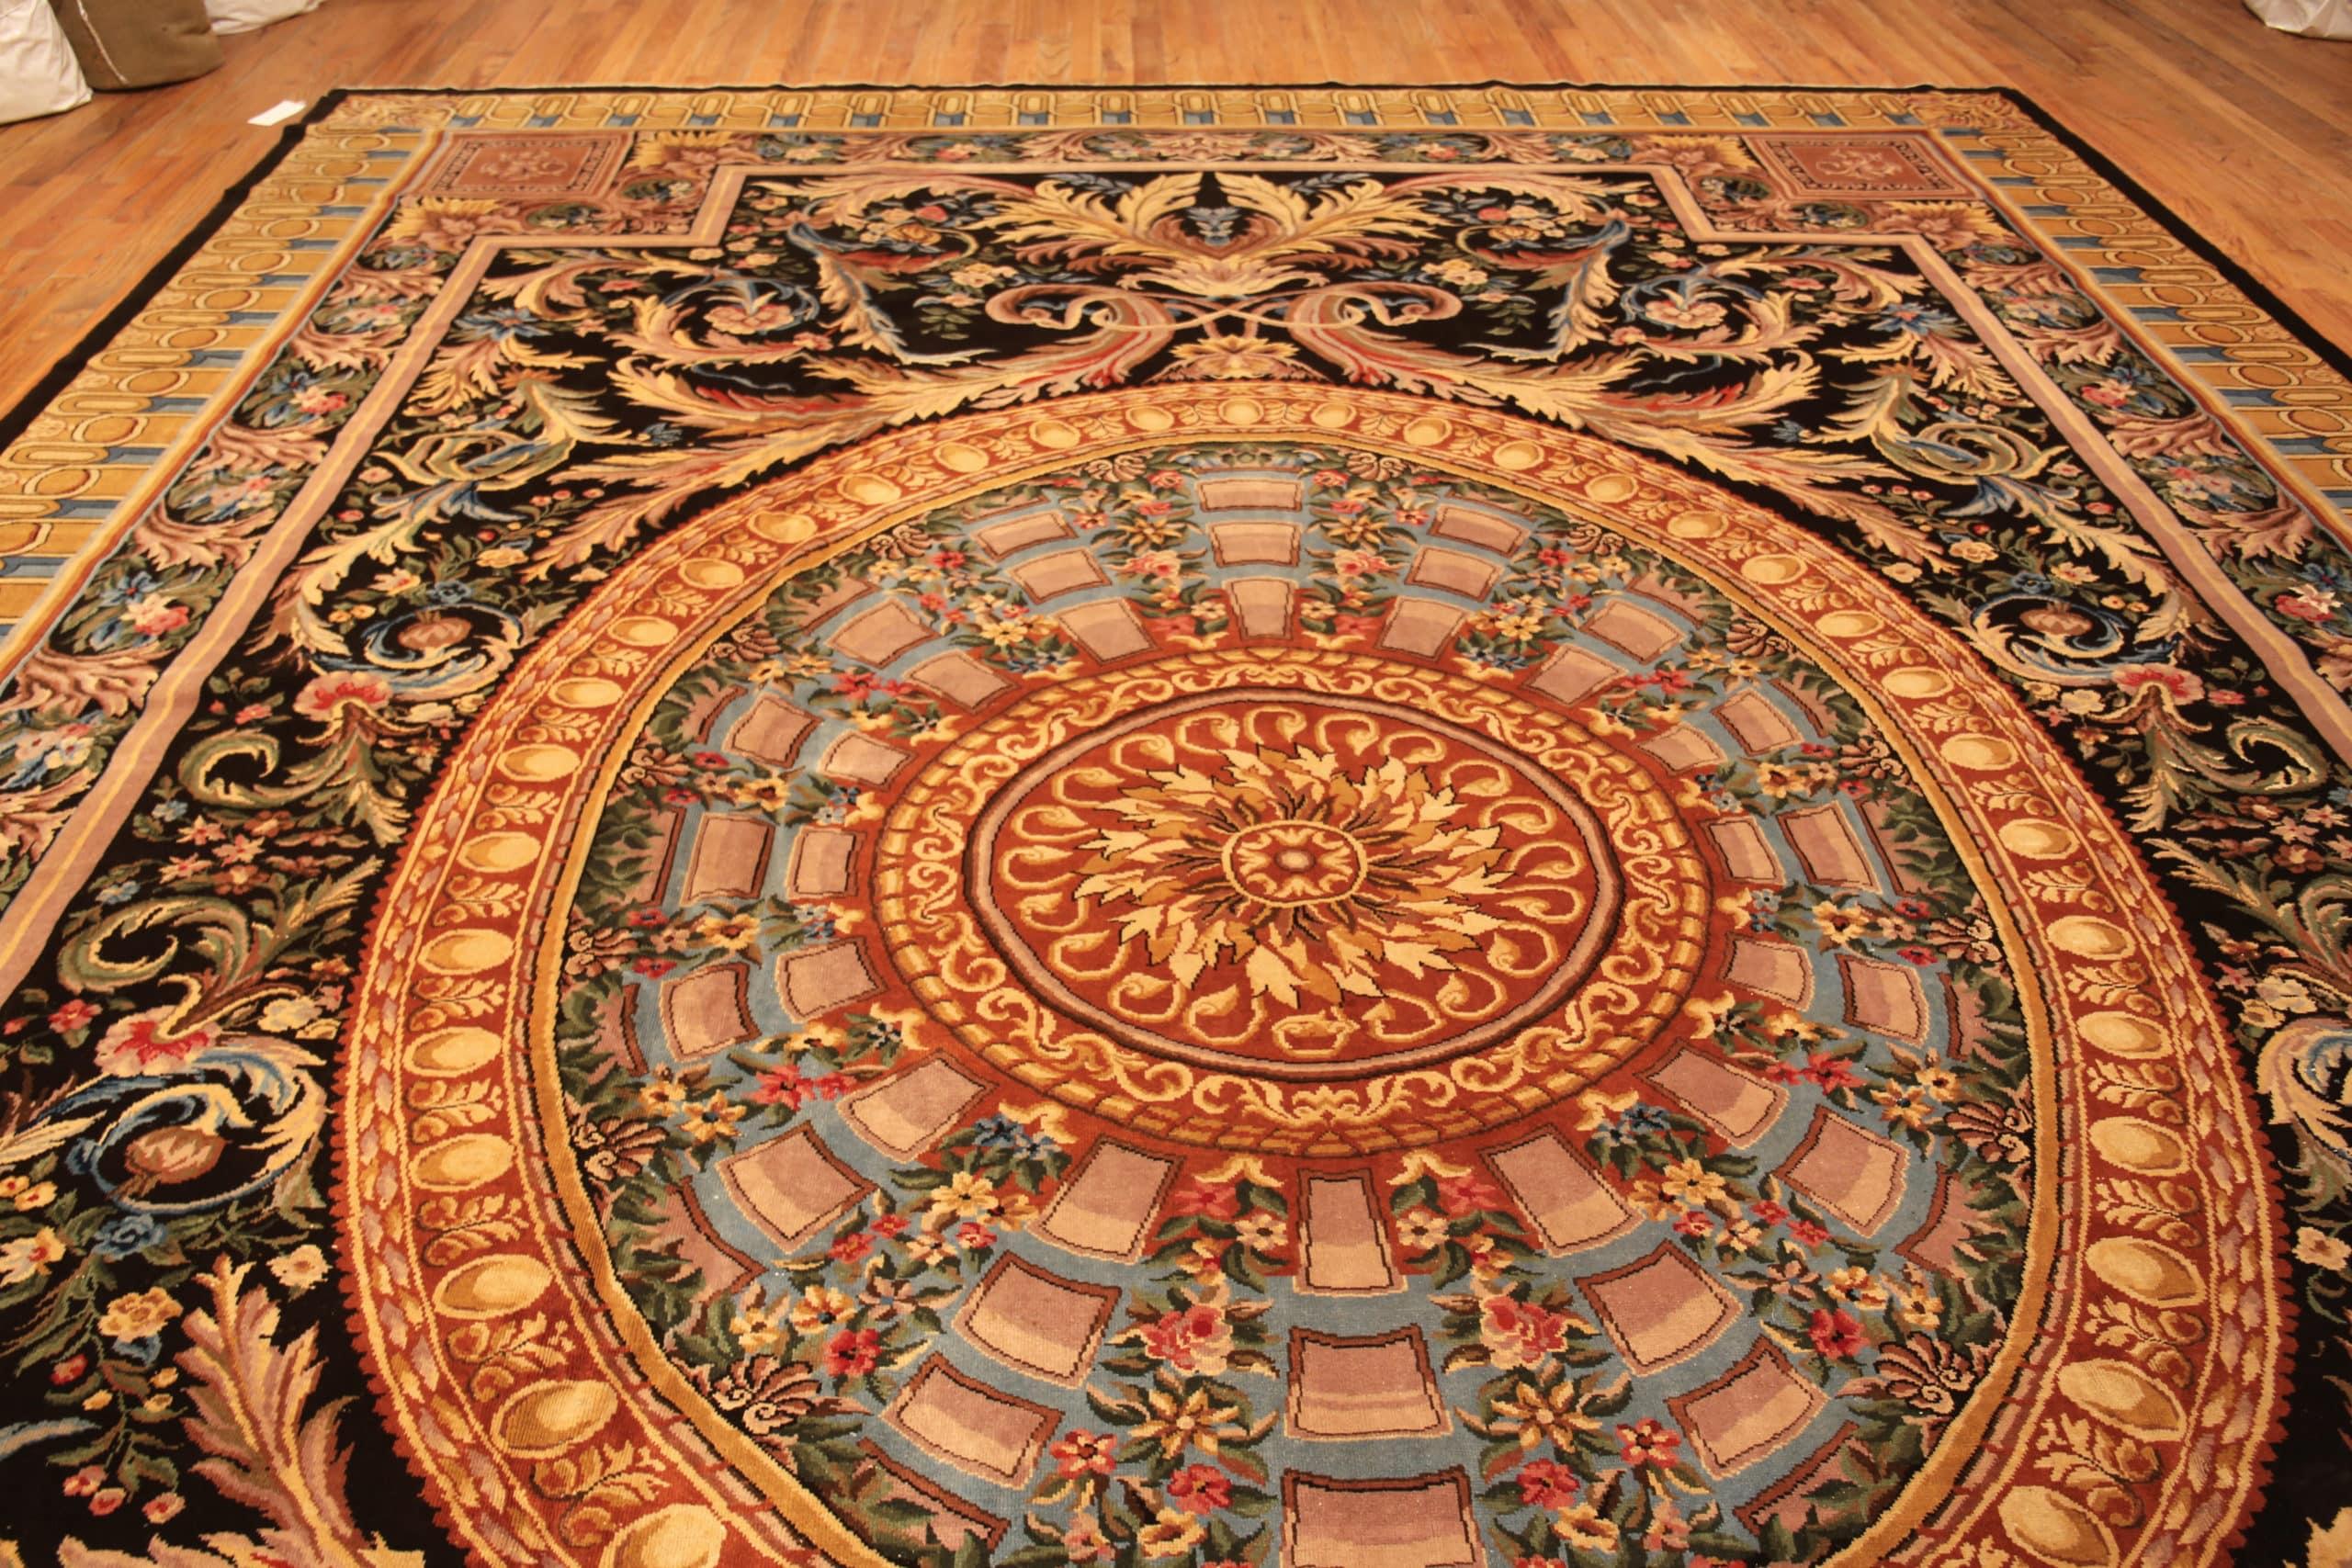 Beau et élégant grand tapis vintage classique de style Renaissance Savonnerie, Pays d'origine : Inde, Date de circa : Vintage . Dimensions : 4,37 m x 5,38 m (14 ft 4 in x 17 ft 8 in)

